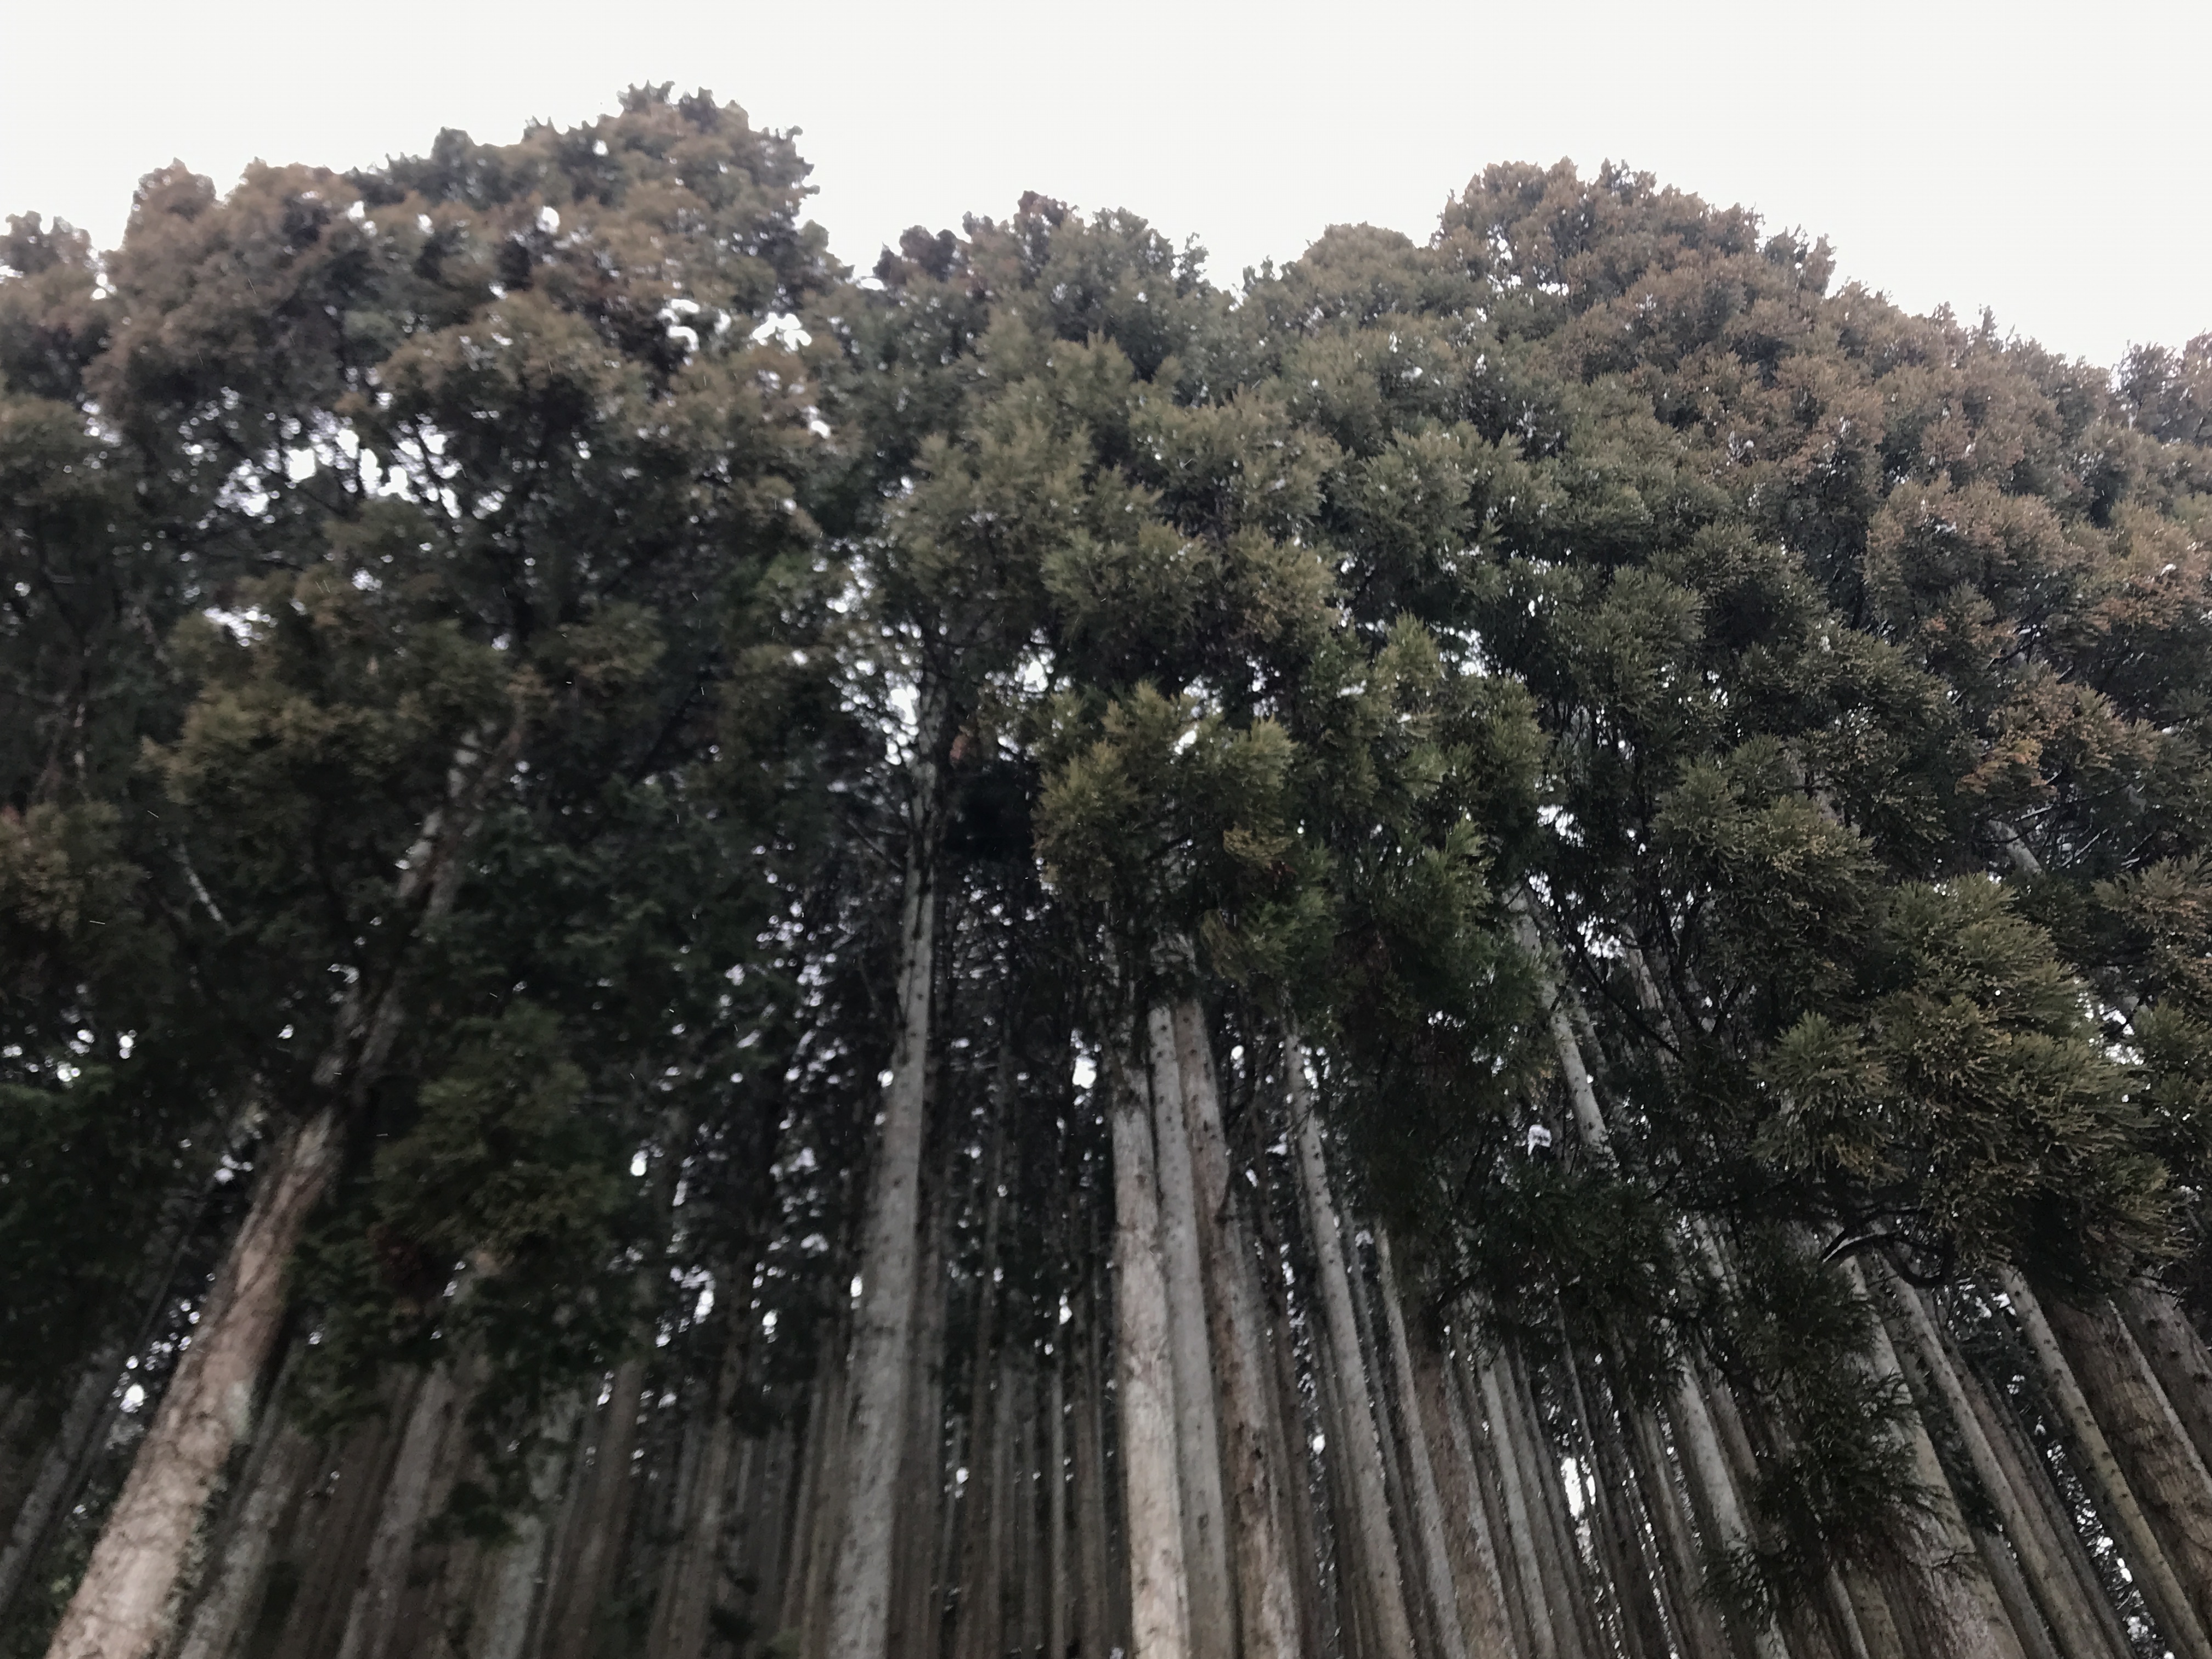 日本の森林の魅力や課題を動画でわかりやすく発信しています